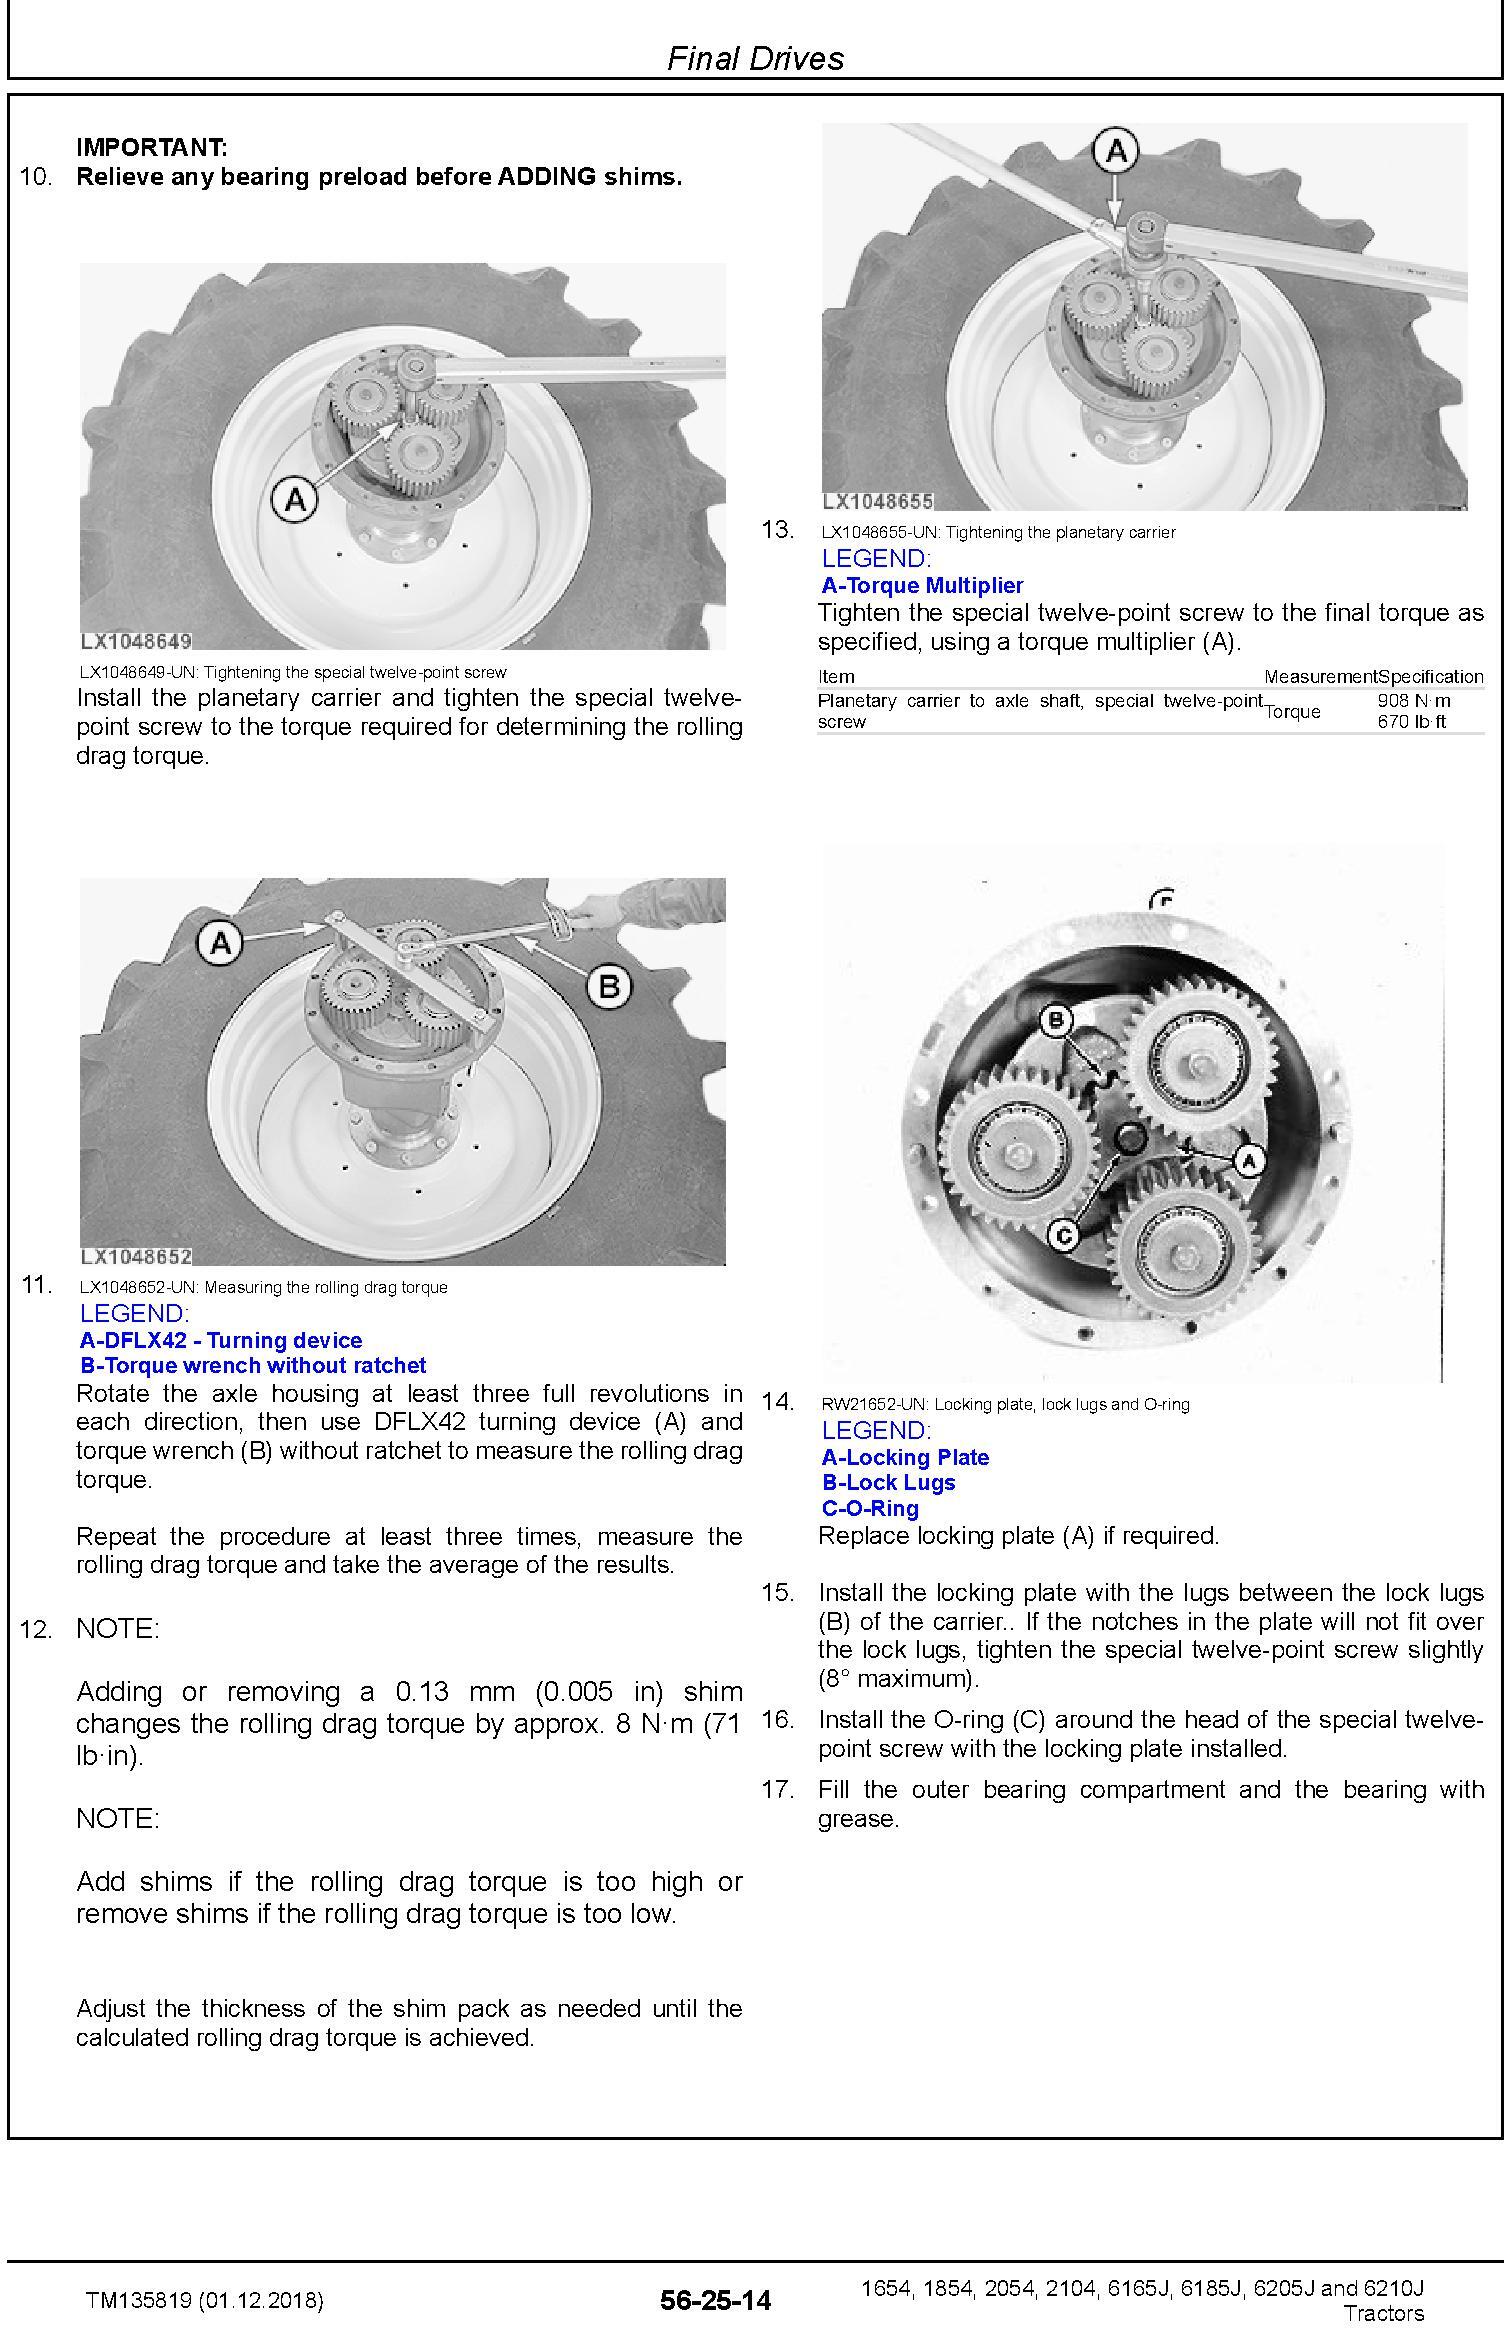 John Deere 6165J(6J-1654), 6185J(6J-1854), 6205J(6J-2054), 6210J(6J-2104) Tractors MY15 Repair Manual (TM135819) - 1